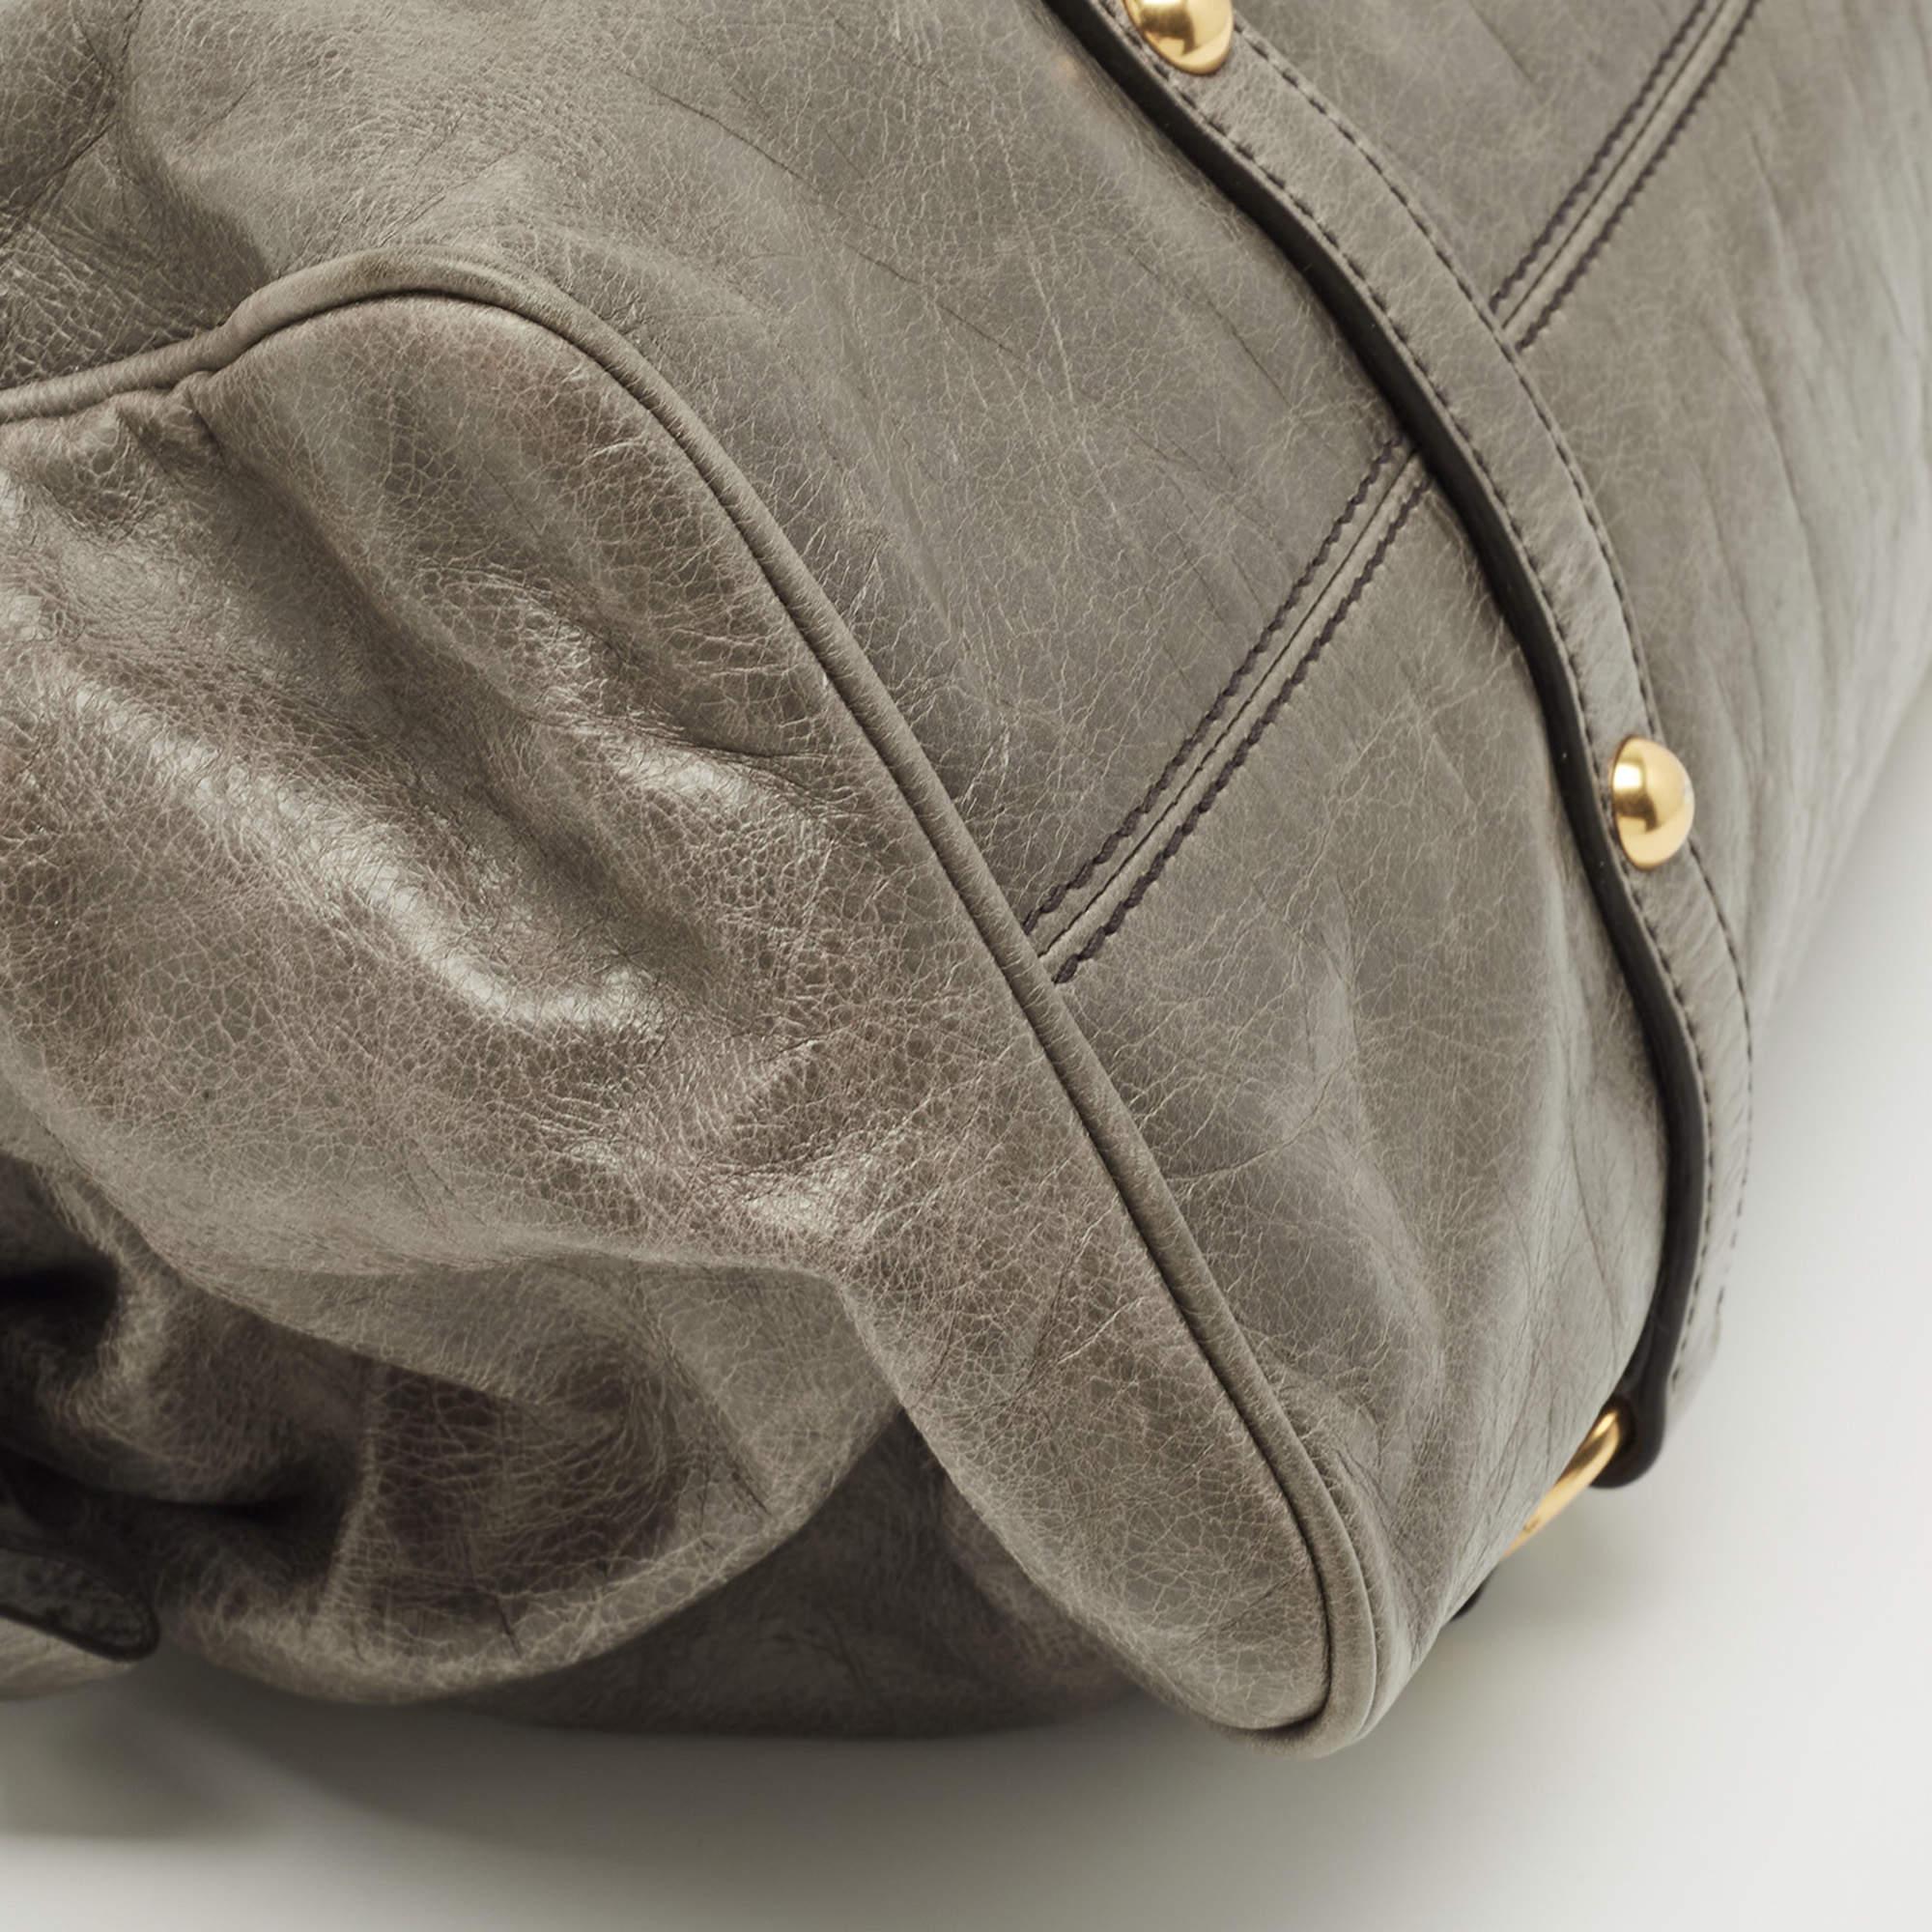 Diese schlichte Tasche von Miu Miu ist in Form und Design eine beliebte Ergänzung für Ihren Kleiderschrank. Sie wurde aus Vitello Lux Leder gefertigt und mit goldfarbenen Beschlägen minimalistisch gestaltet. Sie verfügt über zwei Griffe an der